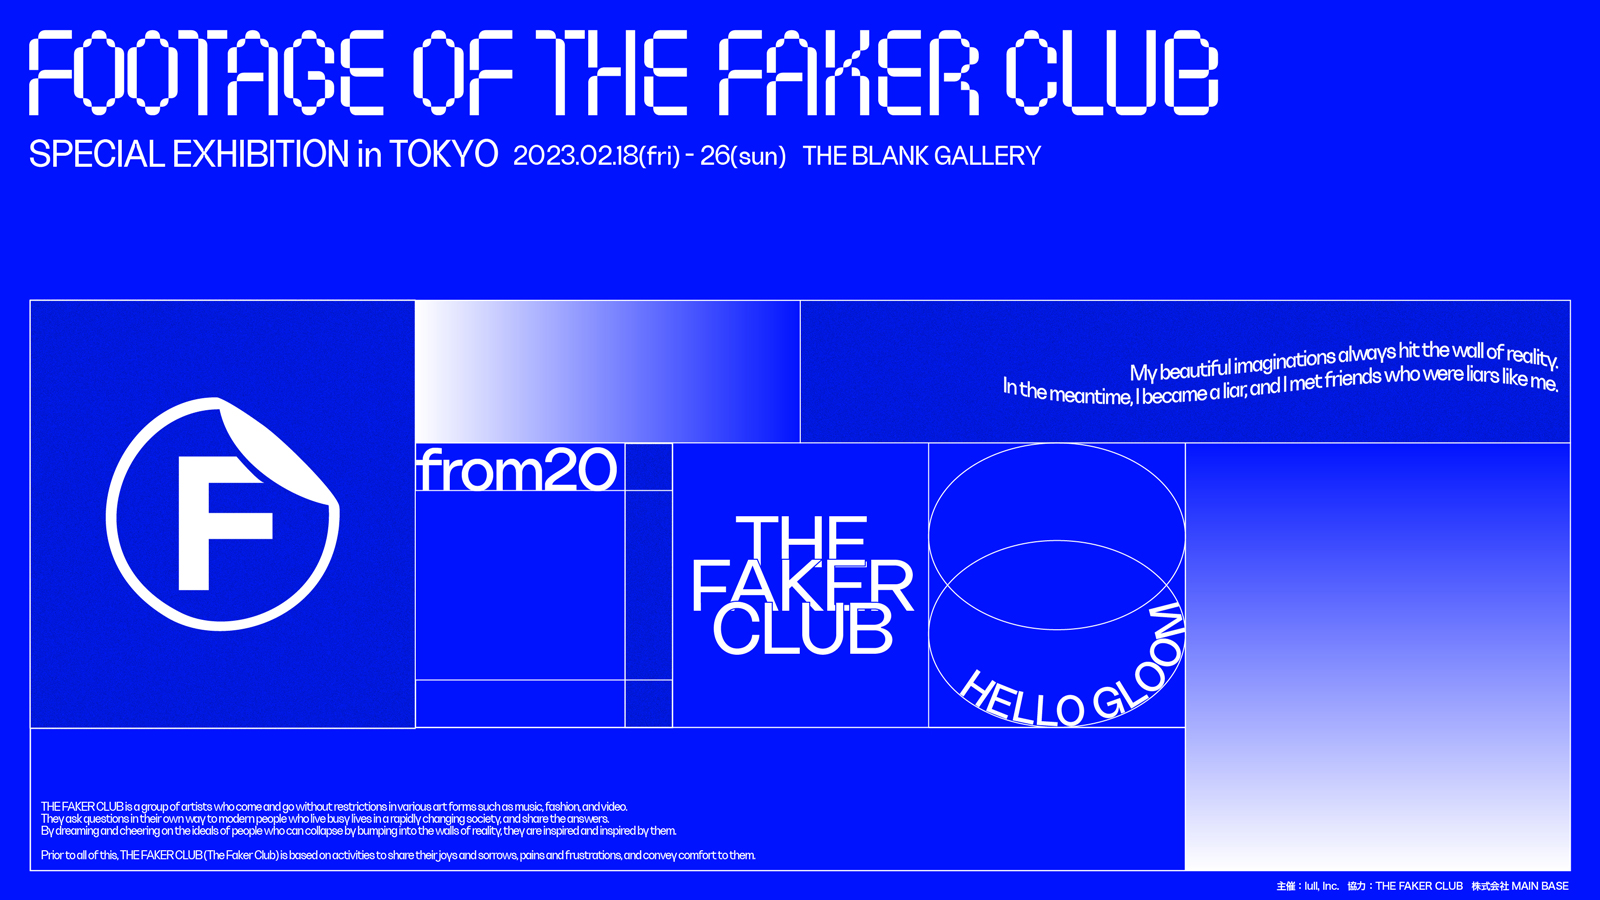 【2月25日(土) ミニツアー付イベントチケット抽選申込】FOOTAGE OF THE FAKER CLUB - SPECIAL EXHIBITION in TOKYO -